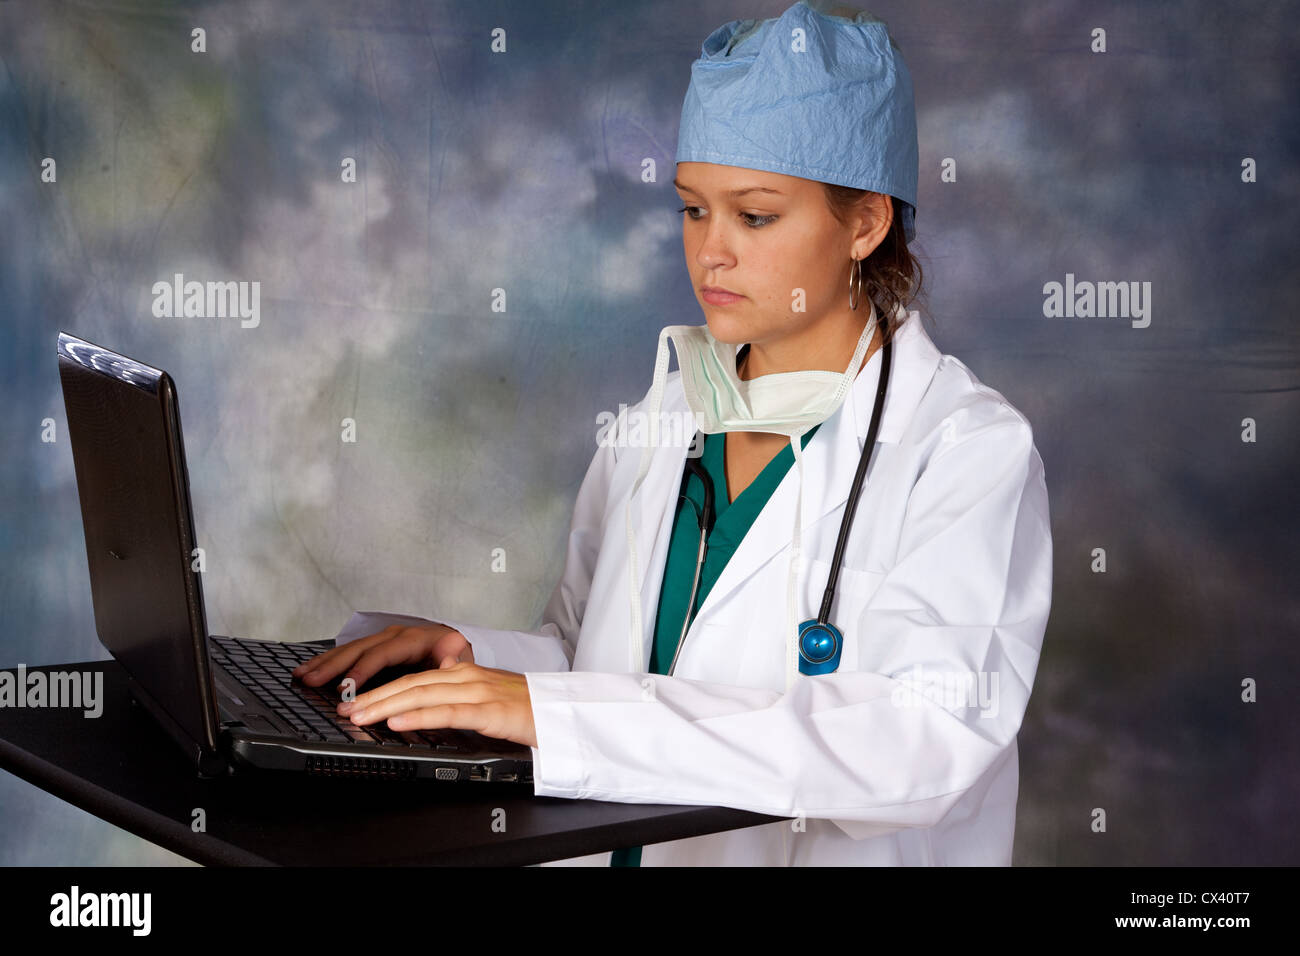 Travailleur de la santé des femmes, portant un sarrau blanc, scrub hat et stéthoscope autour du cou, de la saisie sur un ordinateur portable Banque D'Images